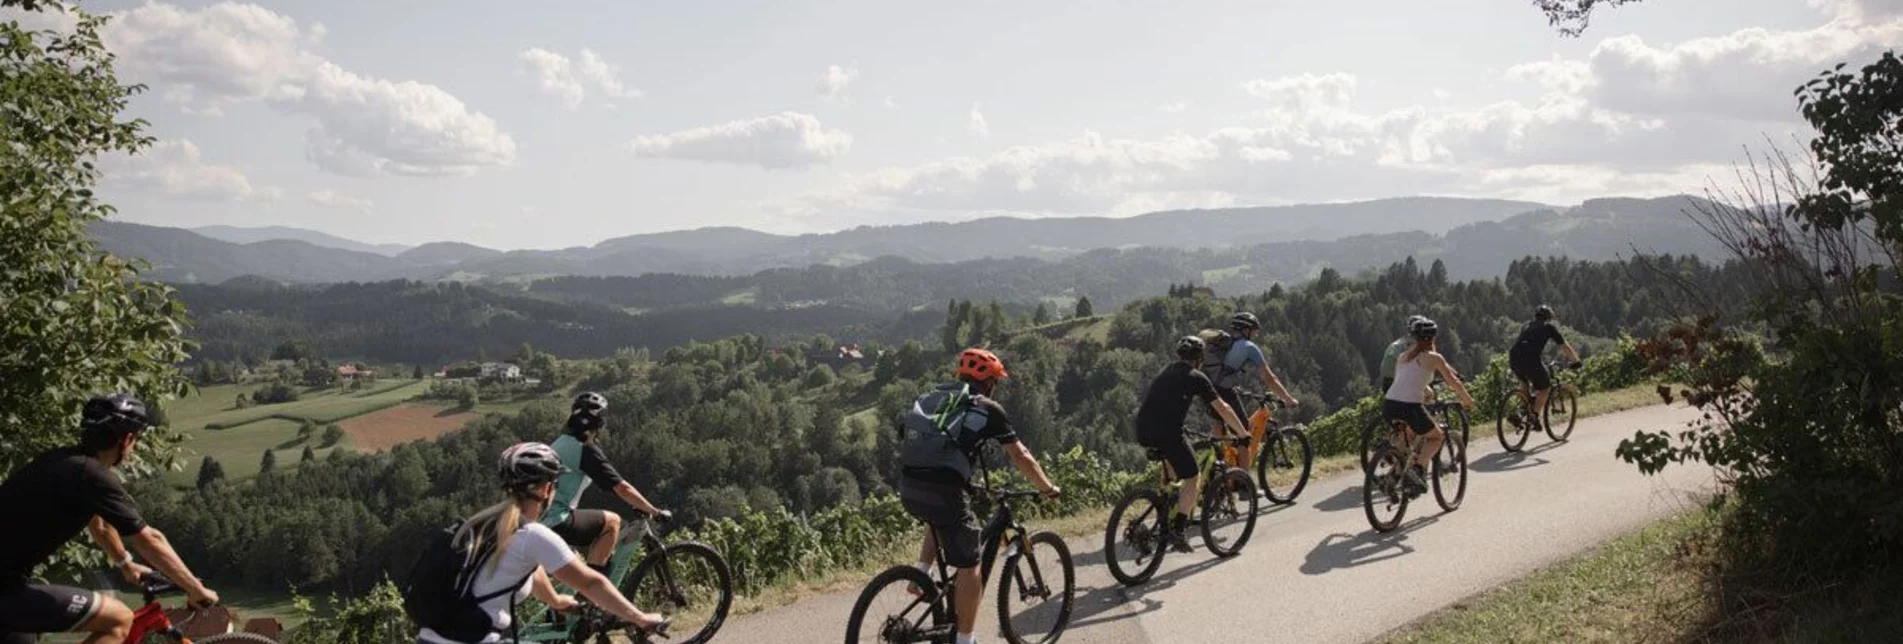 Mountain Biking Radelikat (Wies) - Biking with Pleasure in Schilcherland - Touren-Impression #1 | © Schilcherland Steiermark